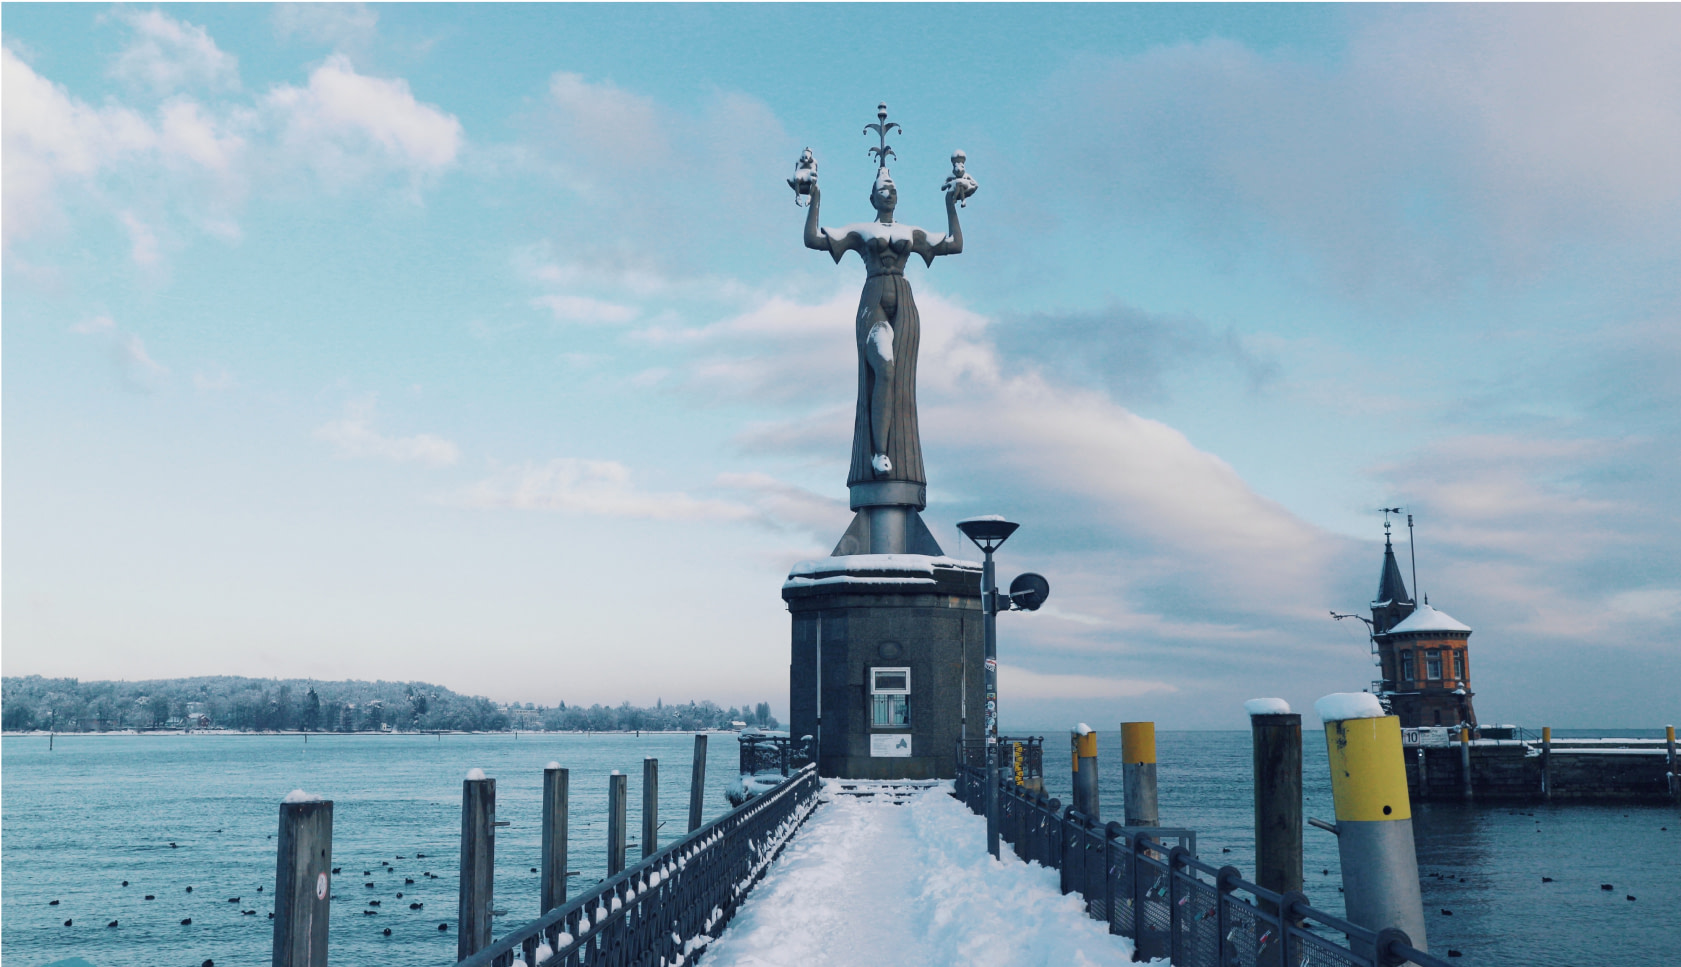 Rundgang durch die Altstadt von Konstanz: Von Schnee bedeckte Imperia Statue im Konstanzer Hafen